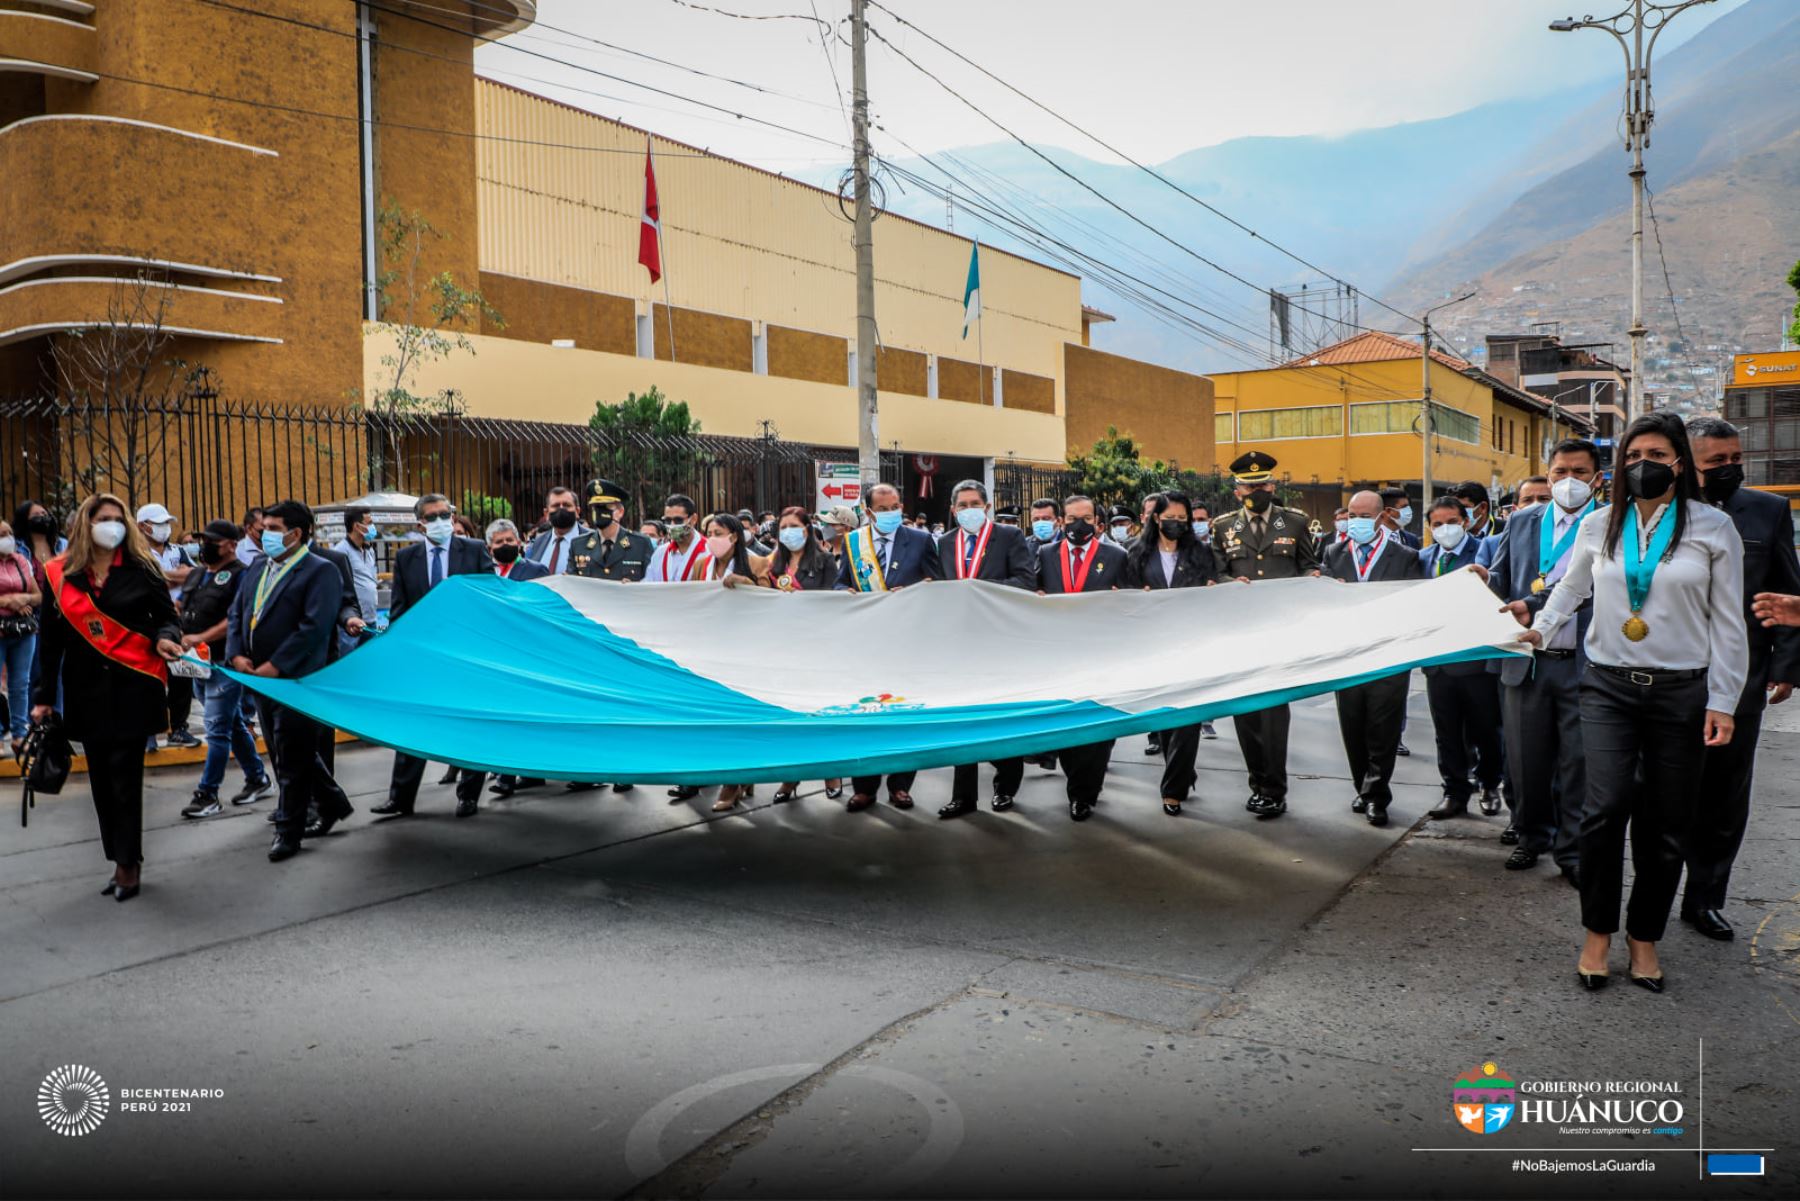 Piura y Huánuco celebran sus aniversarios con diversas actividades